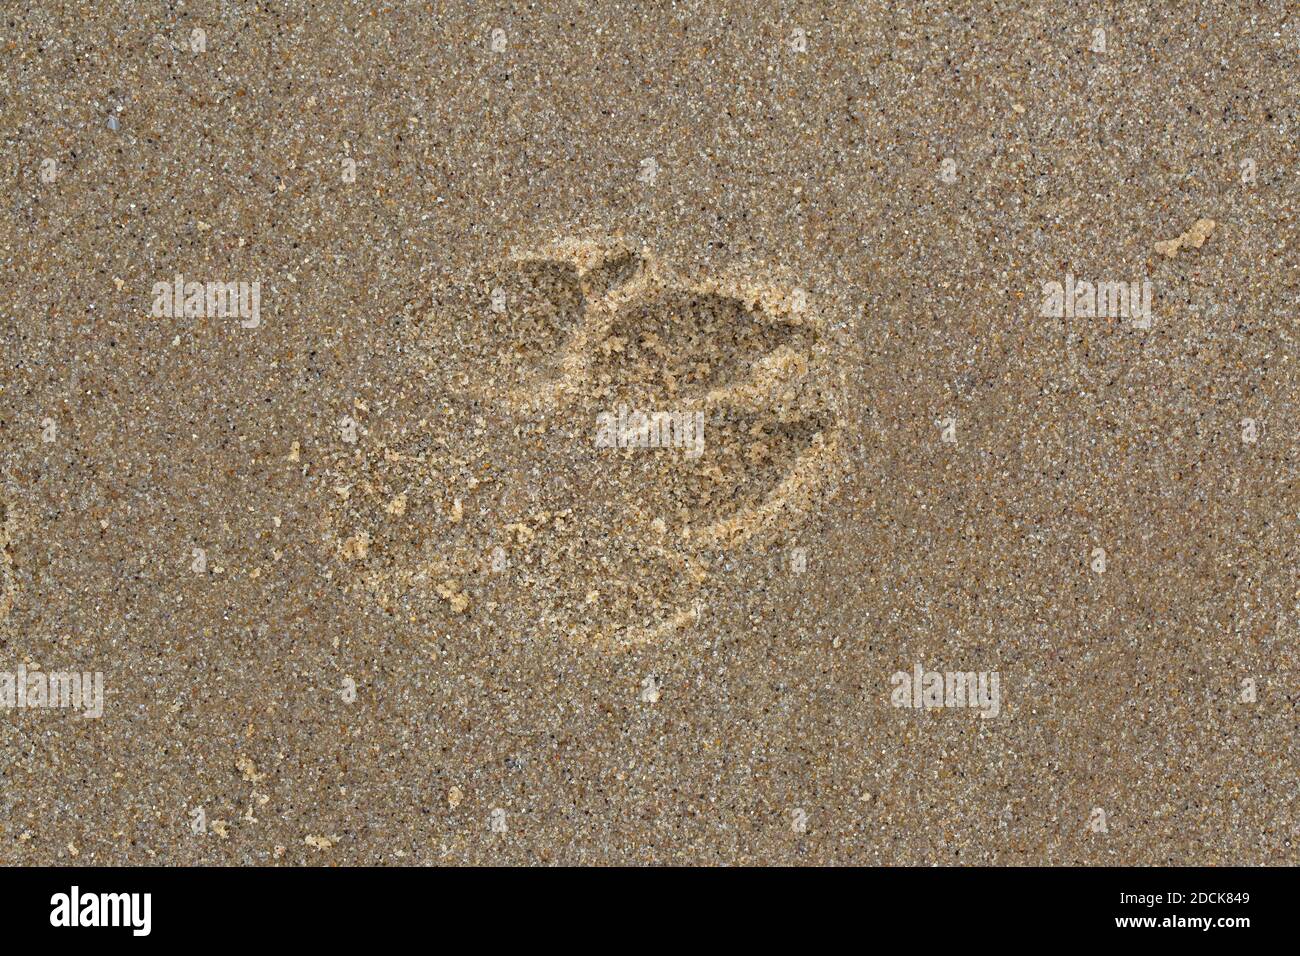 Hundepawprint, frischer Eindruck in weichem Nass, Salzwasser, Sand. Wird nach dem Rückzug bei Flut hergestellt. Happisburgh Beach. Nahaufnahme. Blick sofort nach unten f Stockfoto